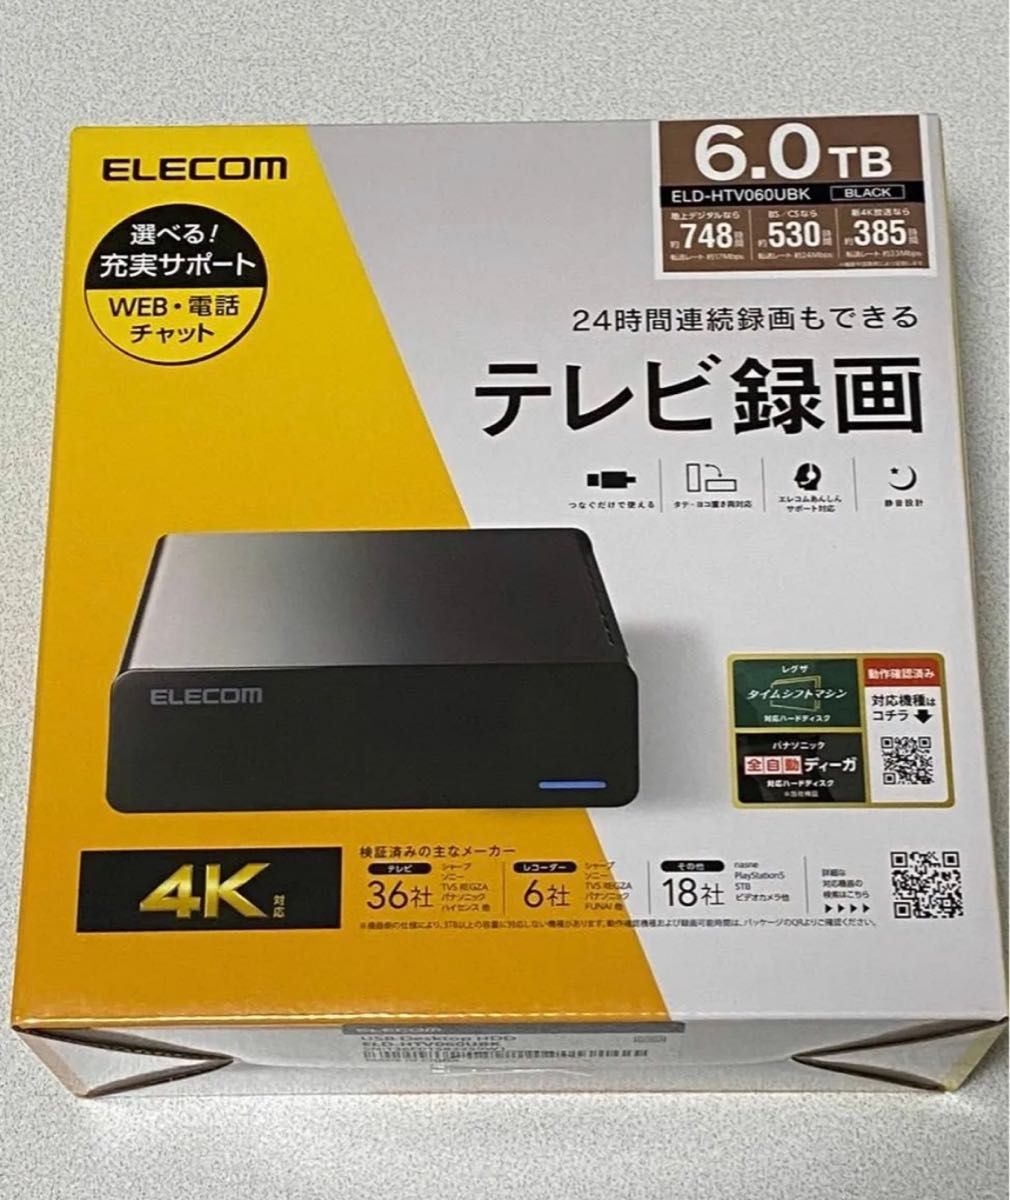 【在庫僅少】エレコム外付けHDD PC TV録画 テレビ録画HDD ELECOM ELD-HTV060UBK 6TB 外箱なし